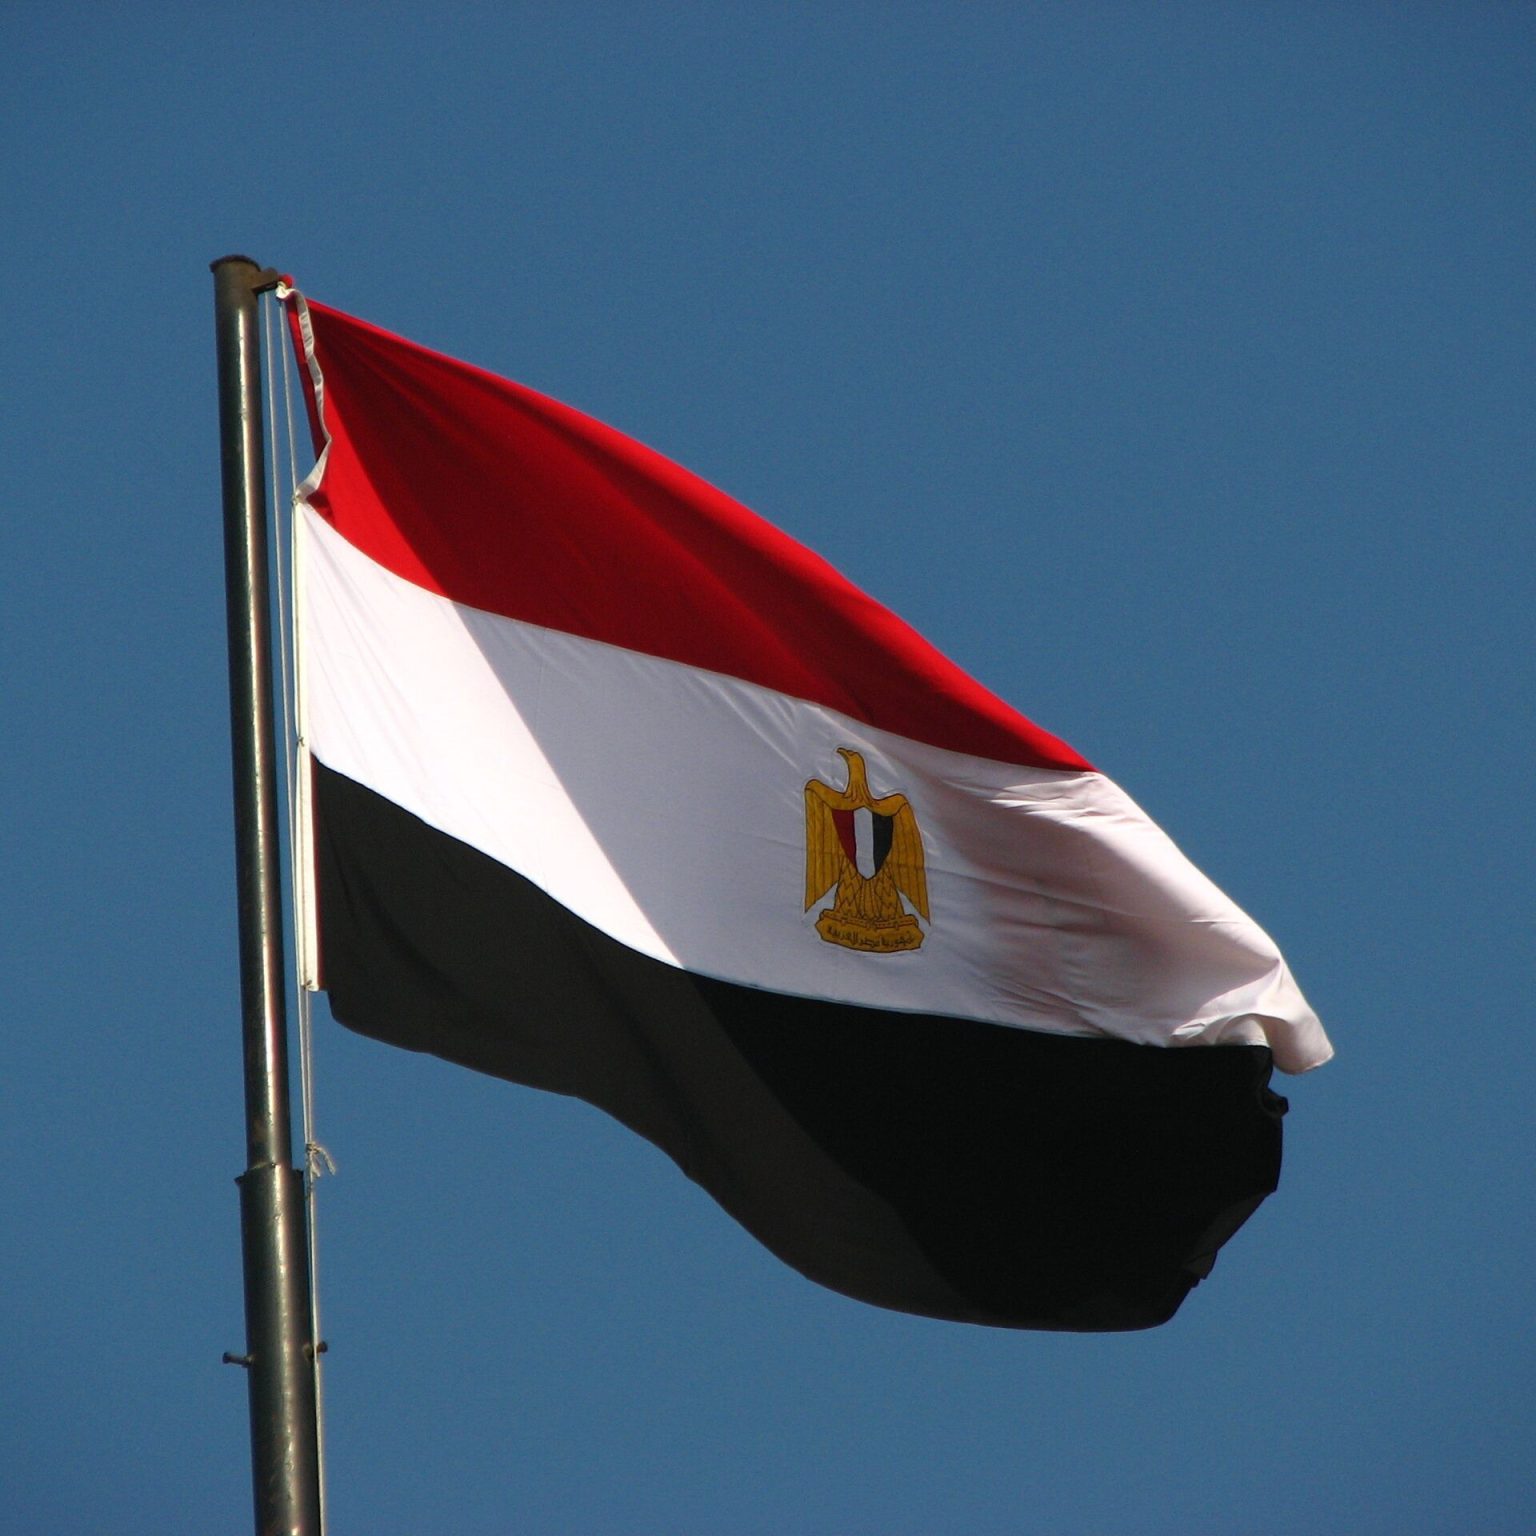 مصر تعلن استعدادها للرد على اي سيناريو يستهدف نزوح الفلسطينيين الى سيناء